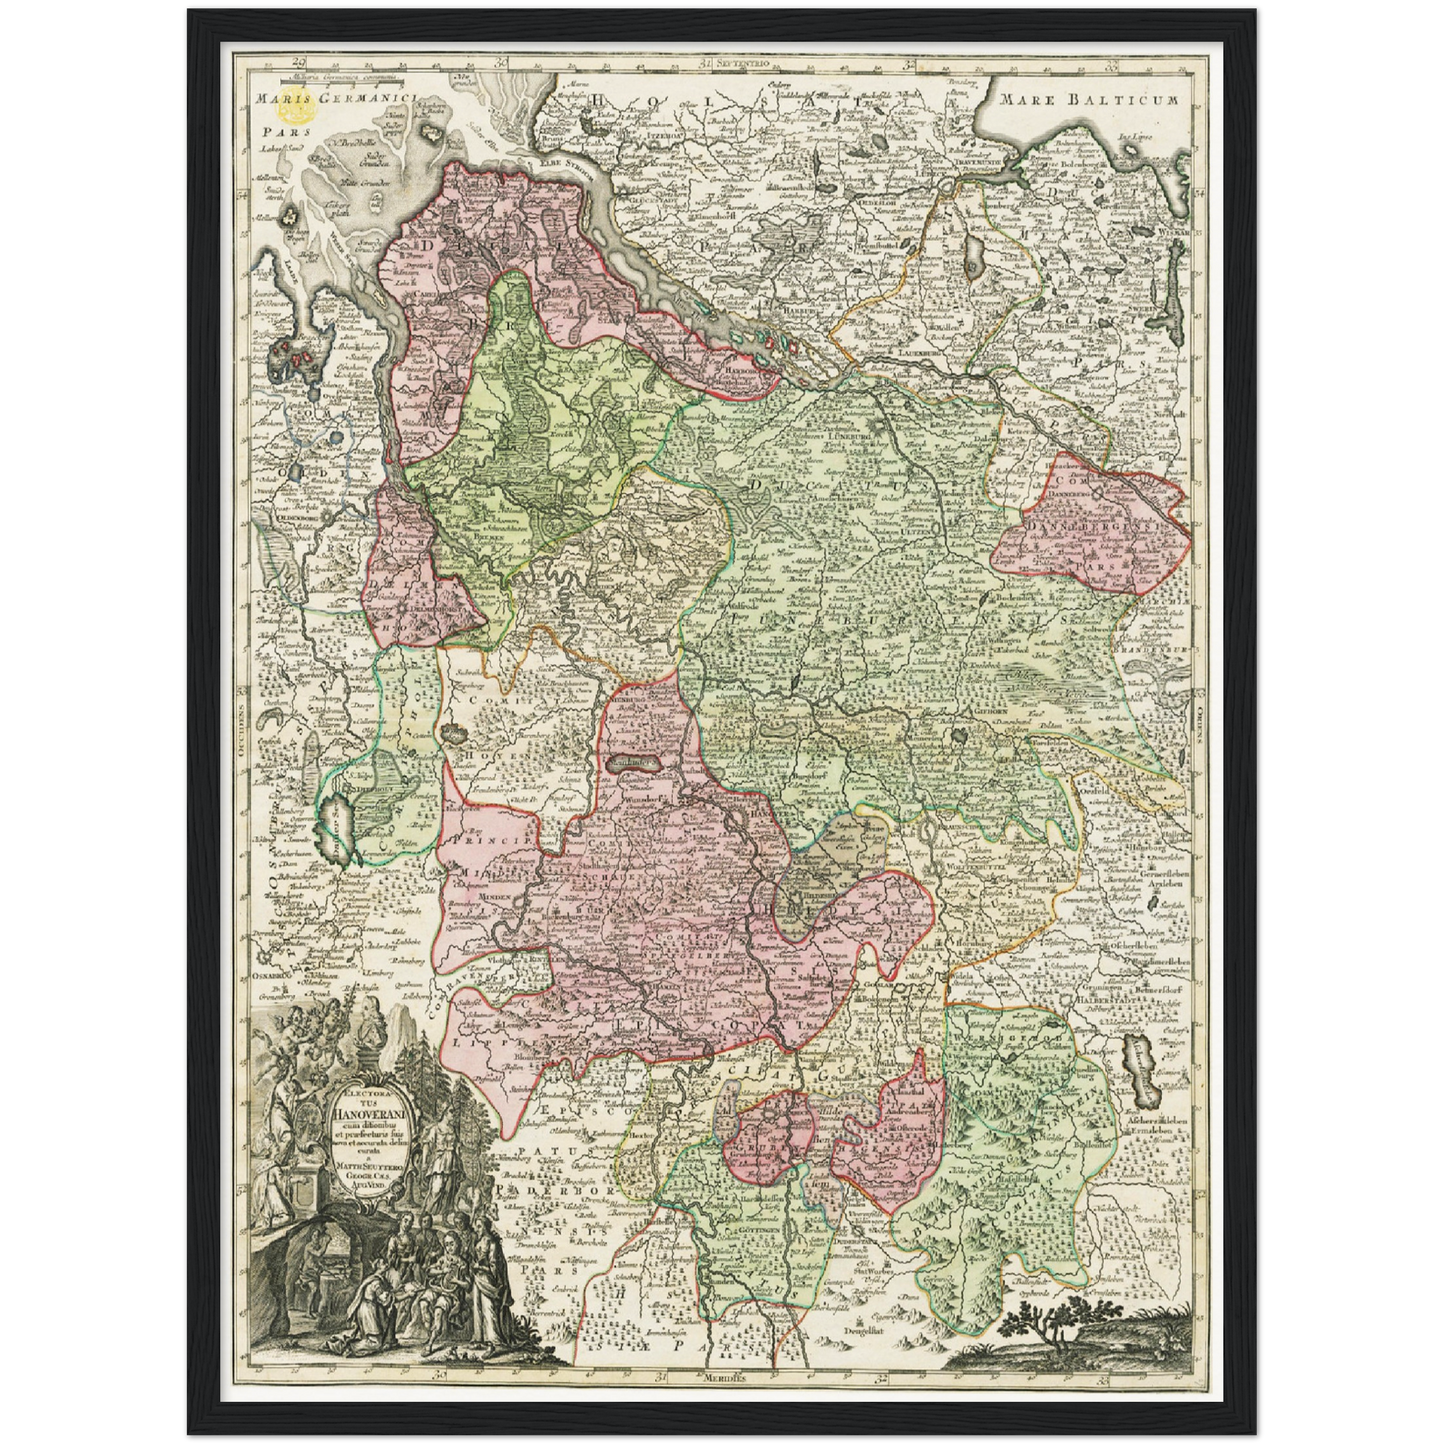 Historische Landkarte Hannover um 1750